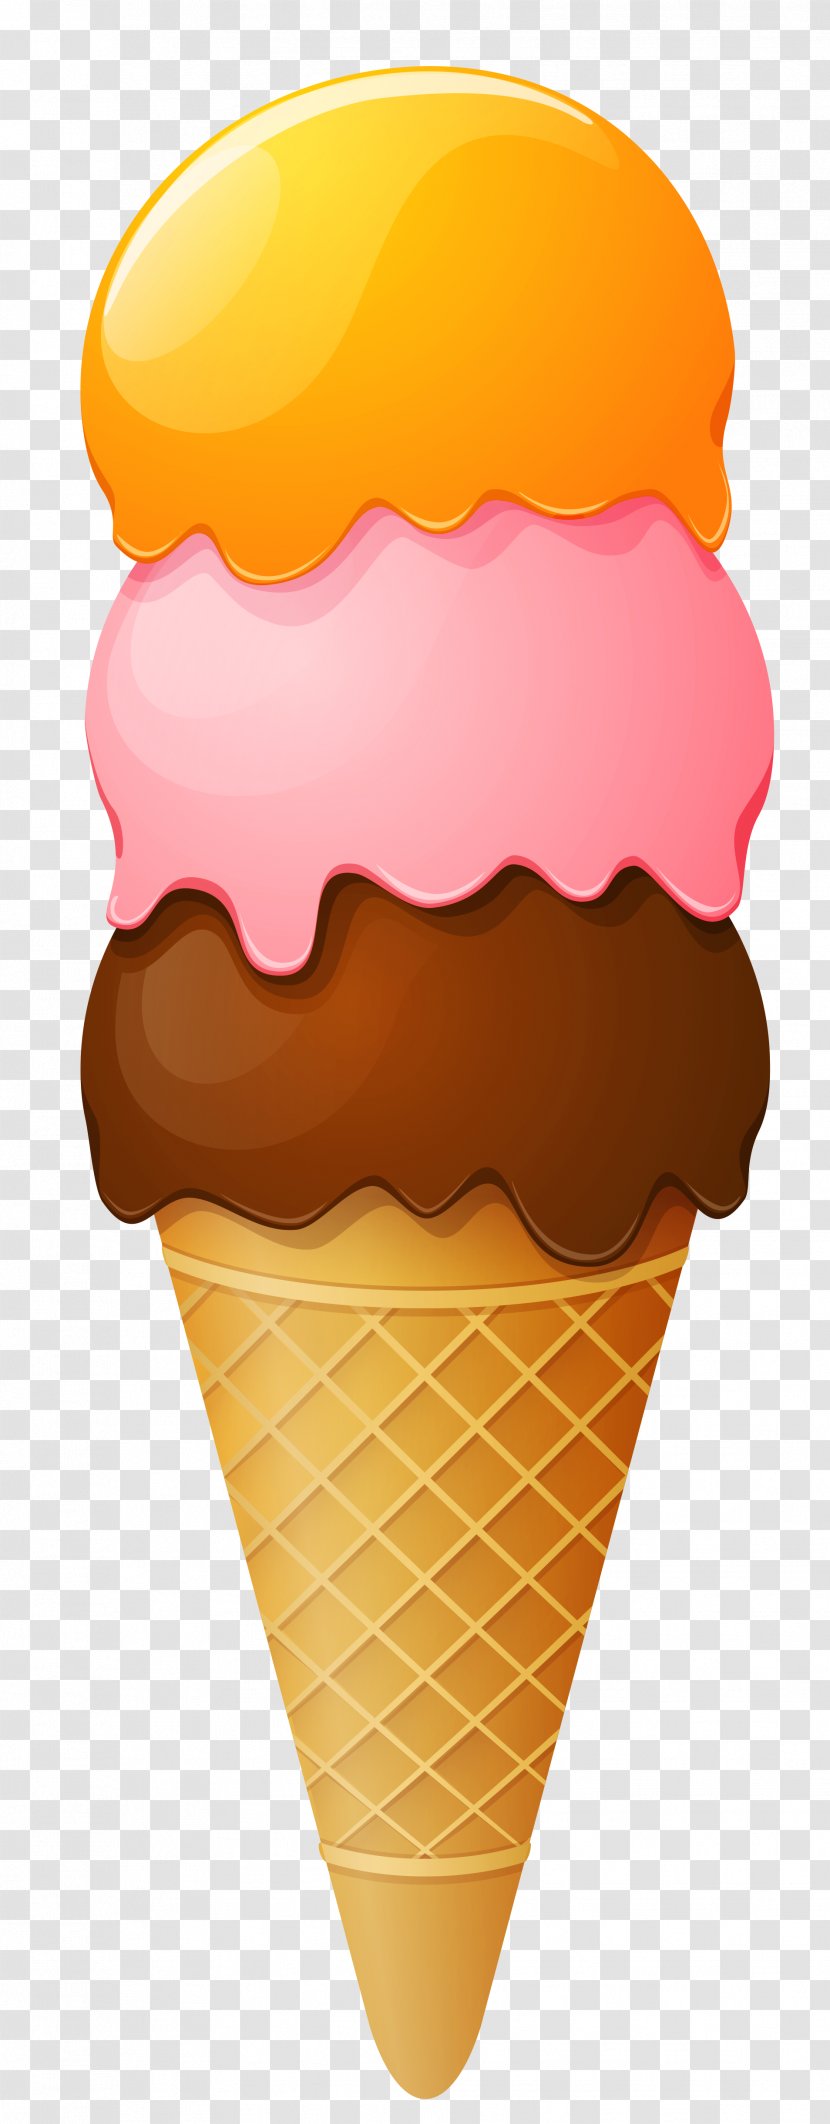 Ice Cream Cones Sundae Clip Art - Dondurma Transparent PNG